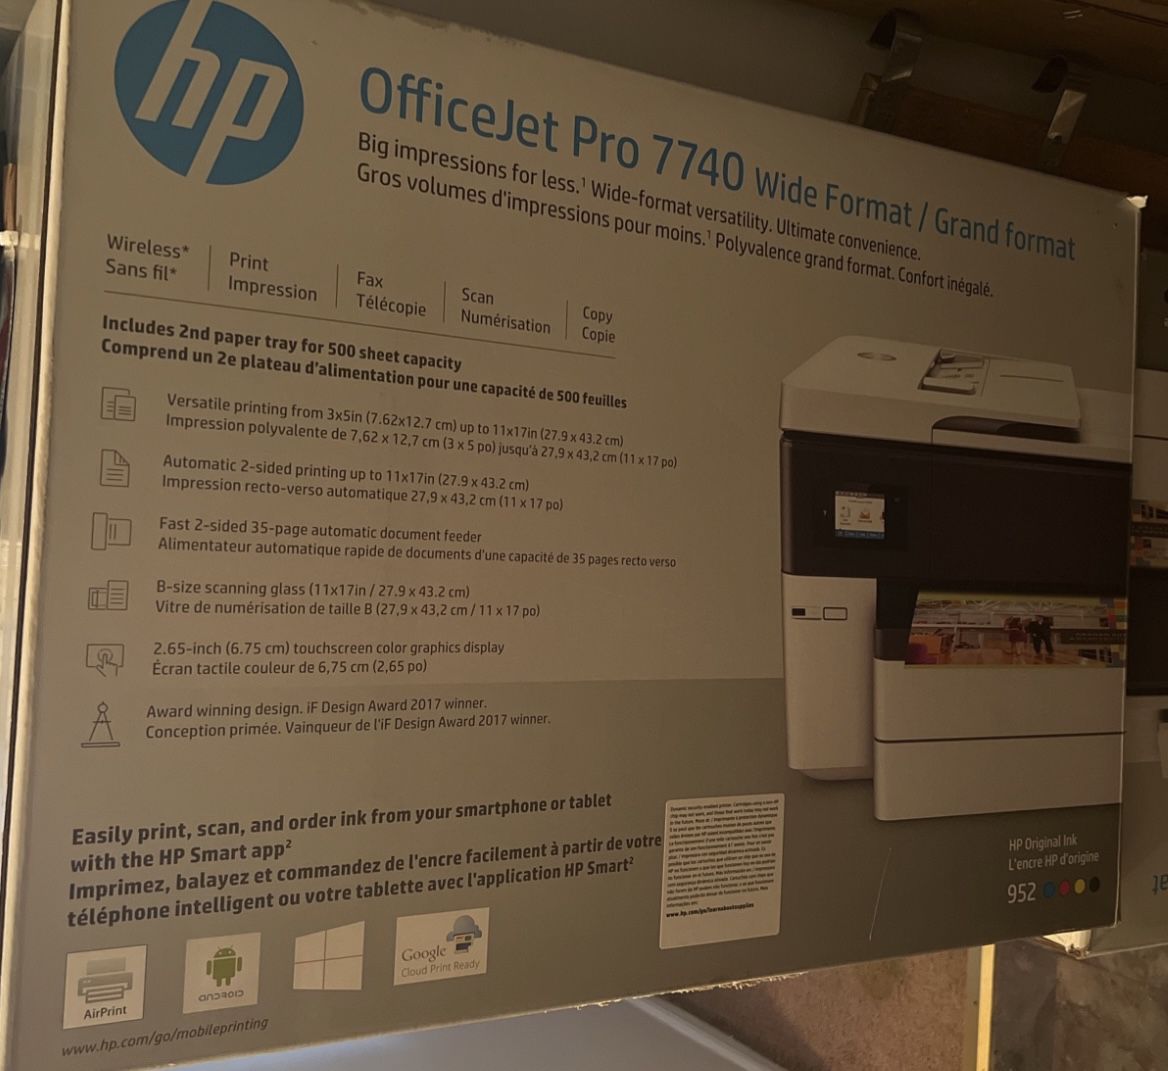 HP OfficeJet Pro 7740 Wide Format/Grand Format